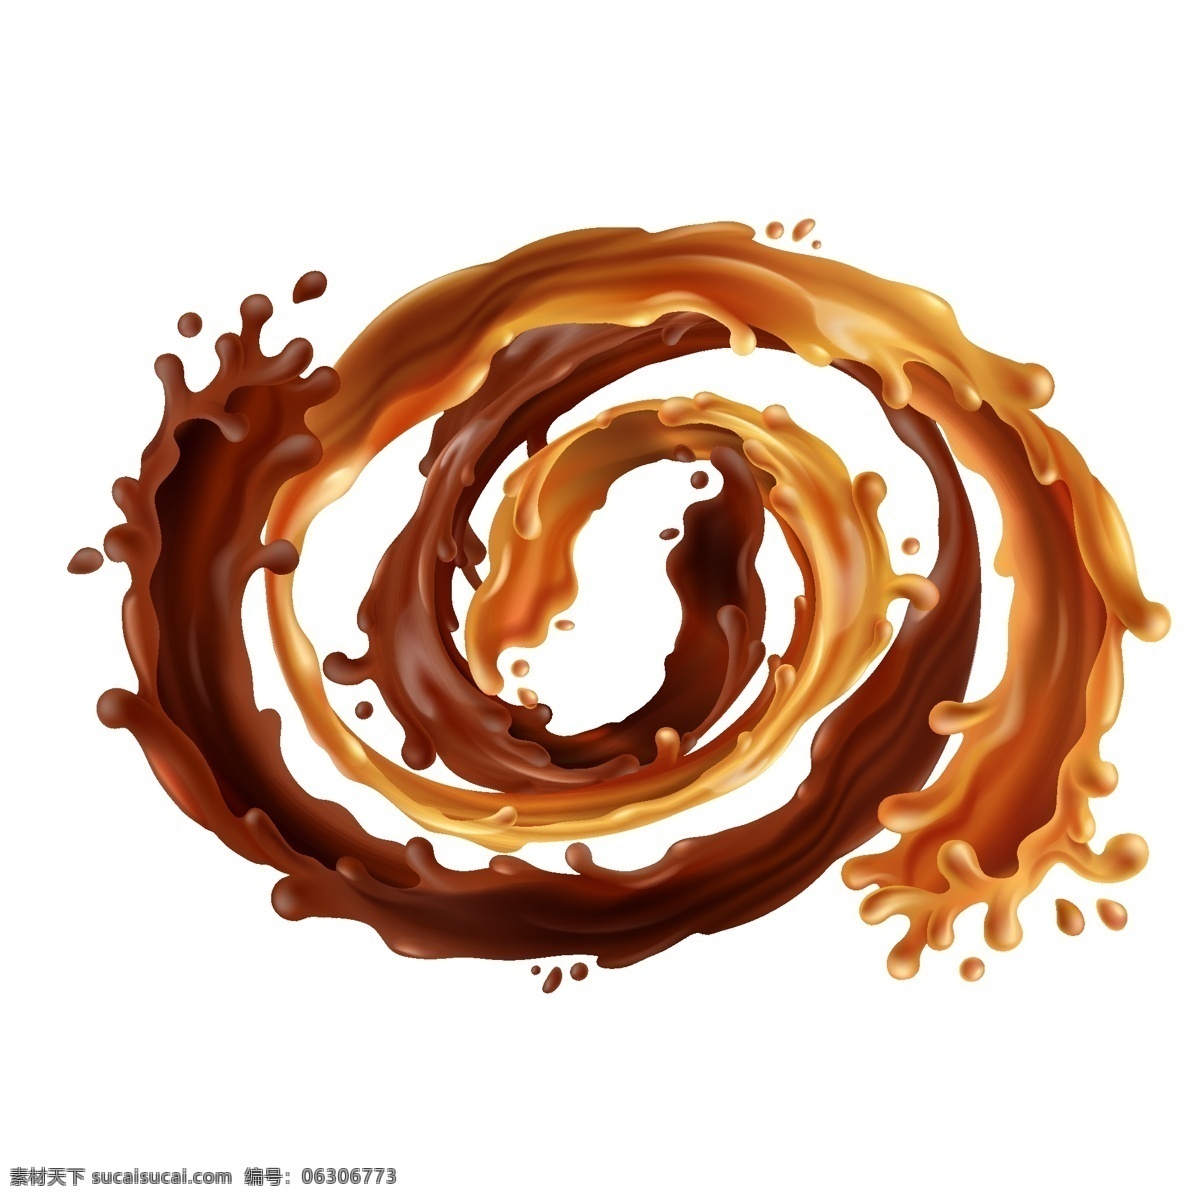 巧克力海报 巧克力 设计素材 背景图片 液态巧克力 美食 甜食 海报 商场海报